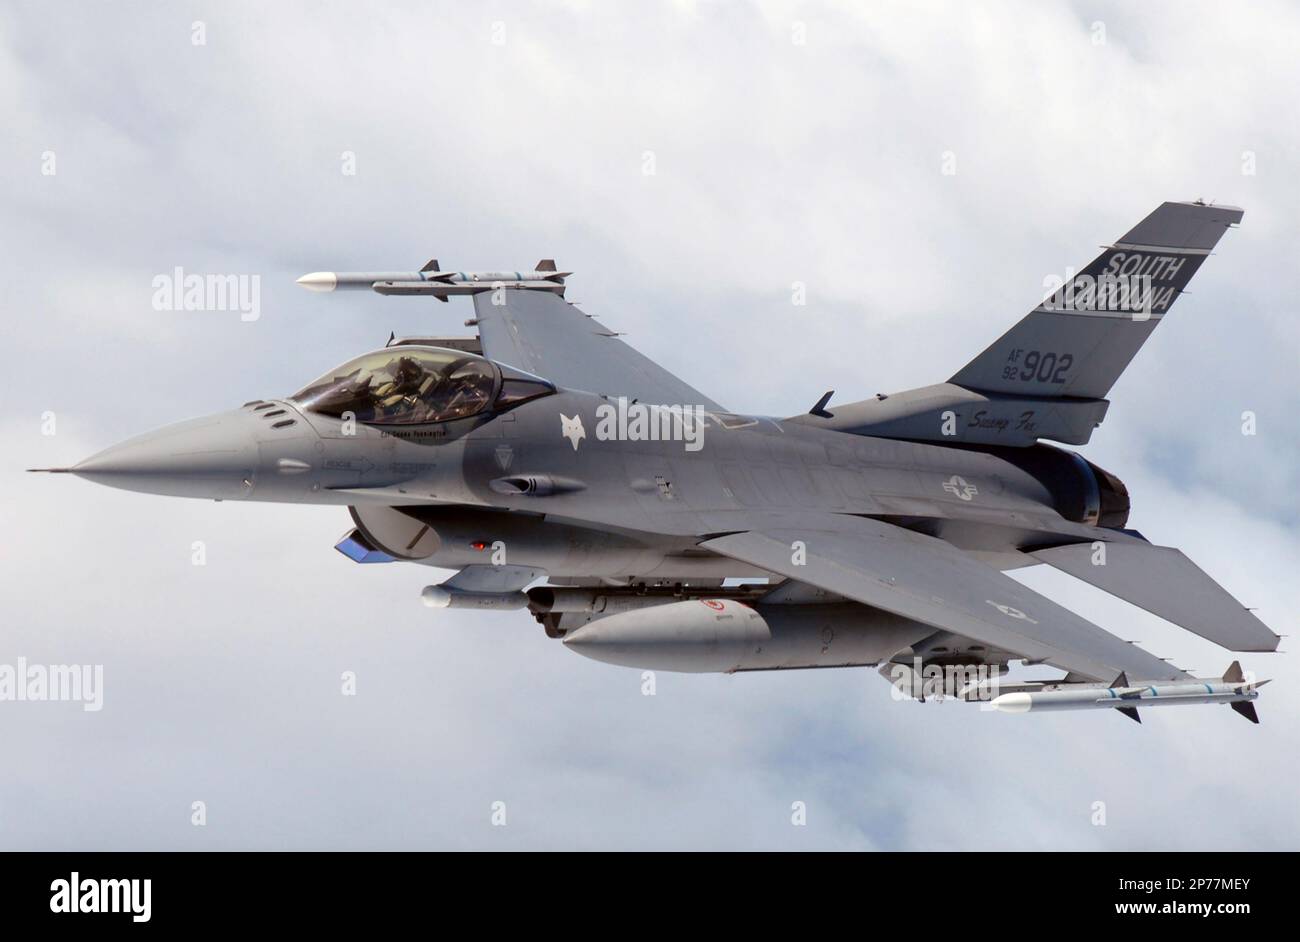 F-16C Fighting Falcon caza multirol de la Guardia Nacional Aérea de Carolina del Sur ecupiado con misiles aire-aire, bomba ra k, pods y pods ECM. Foto de stock